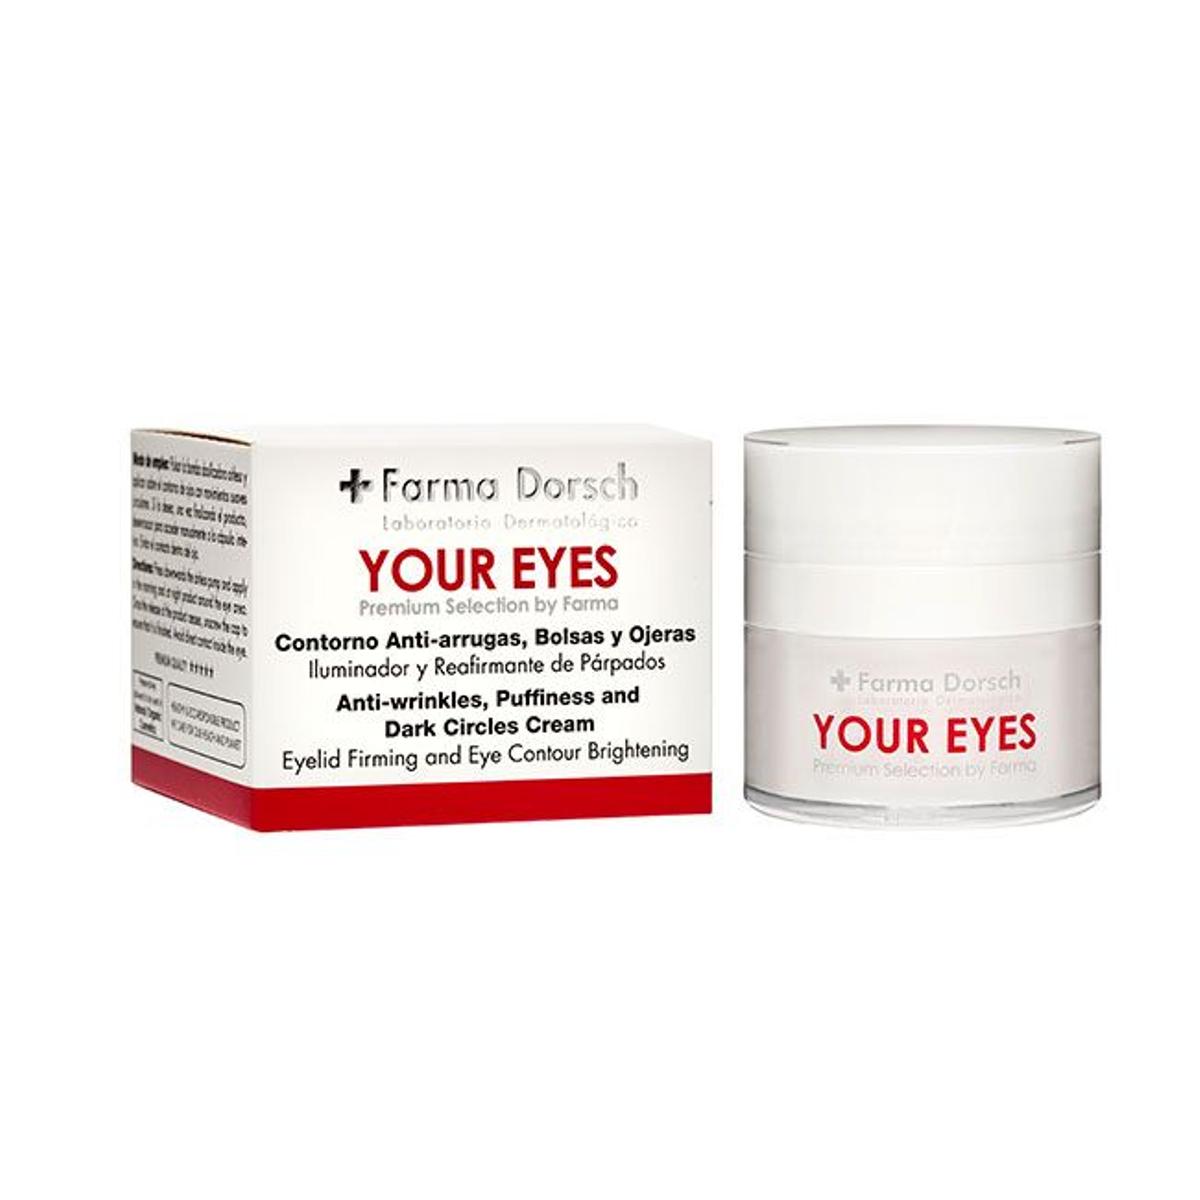 Your Eyes de +Farma Dorsch